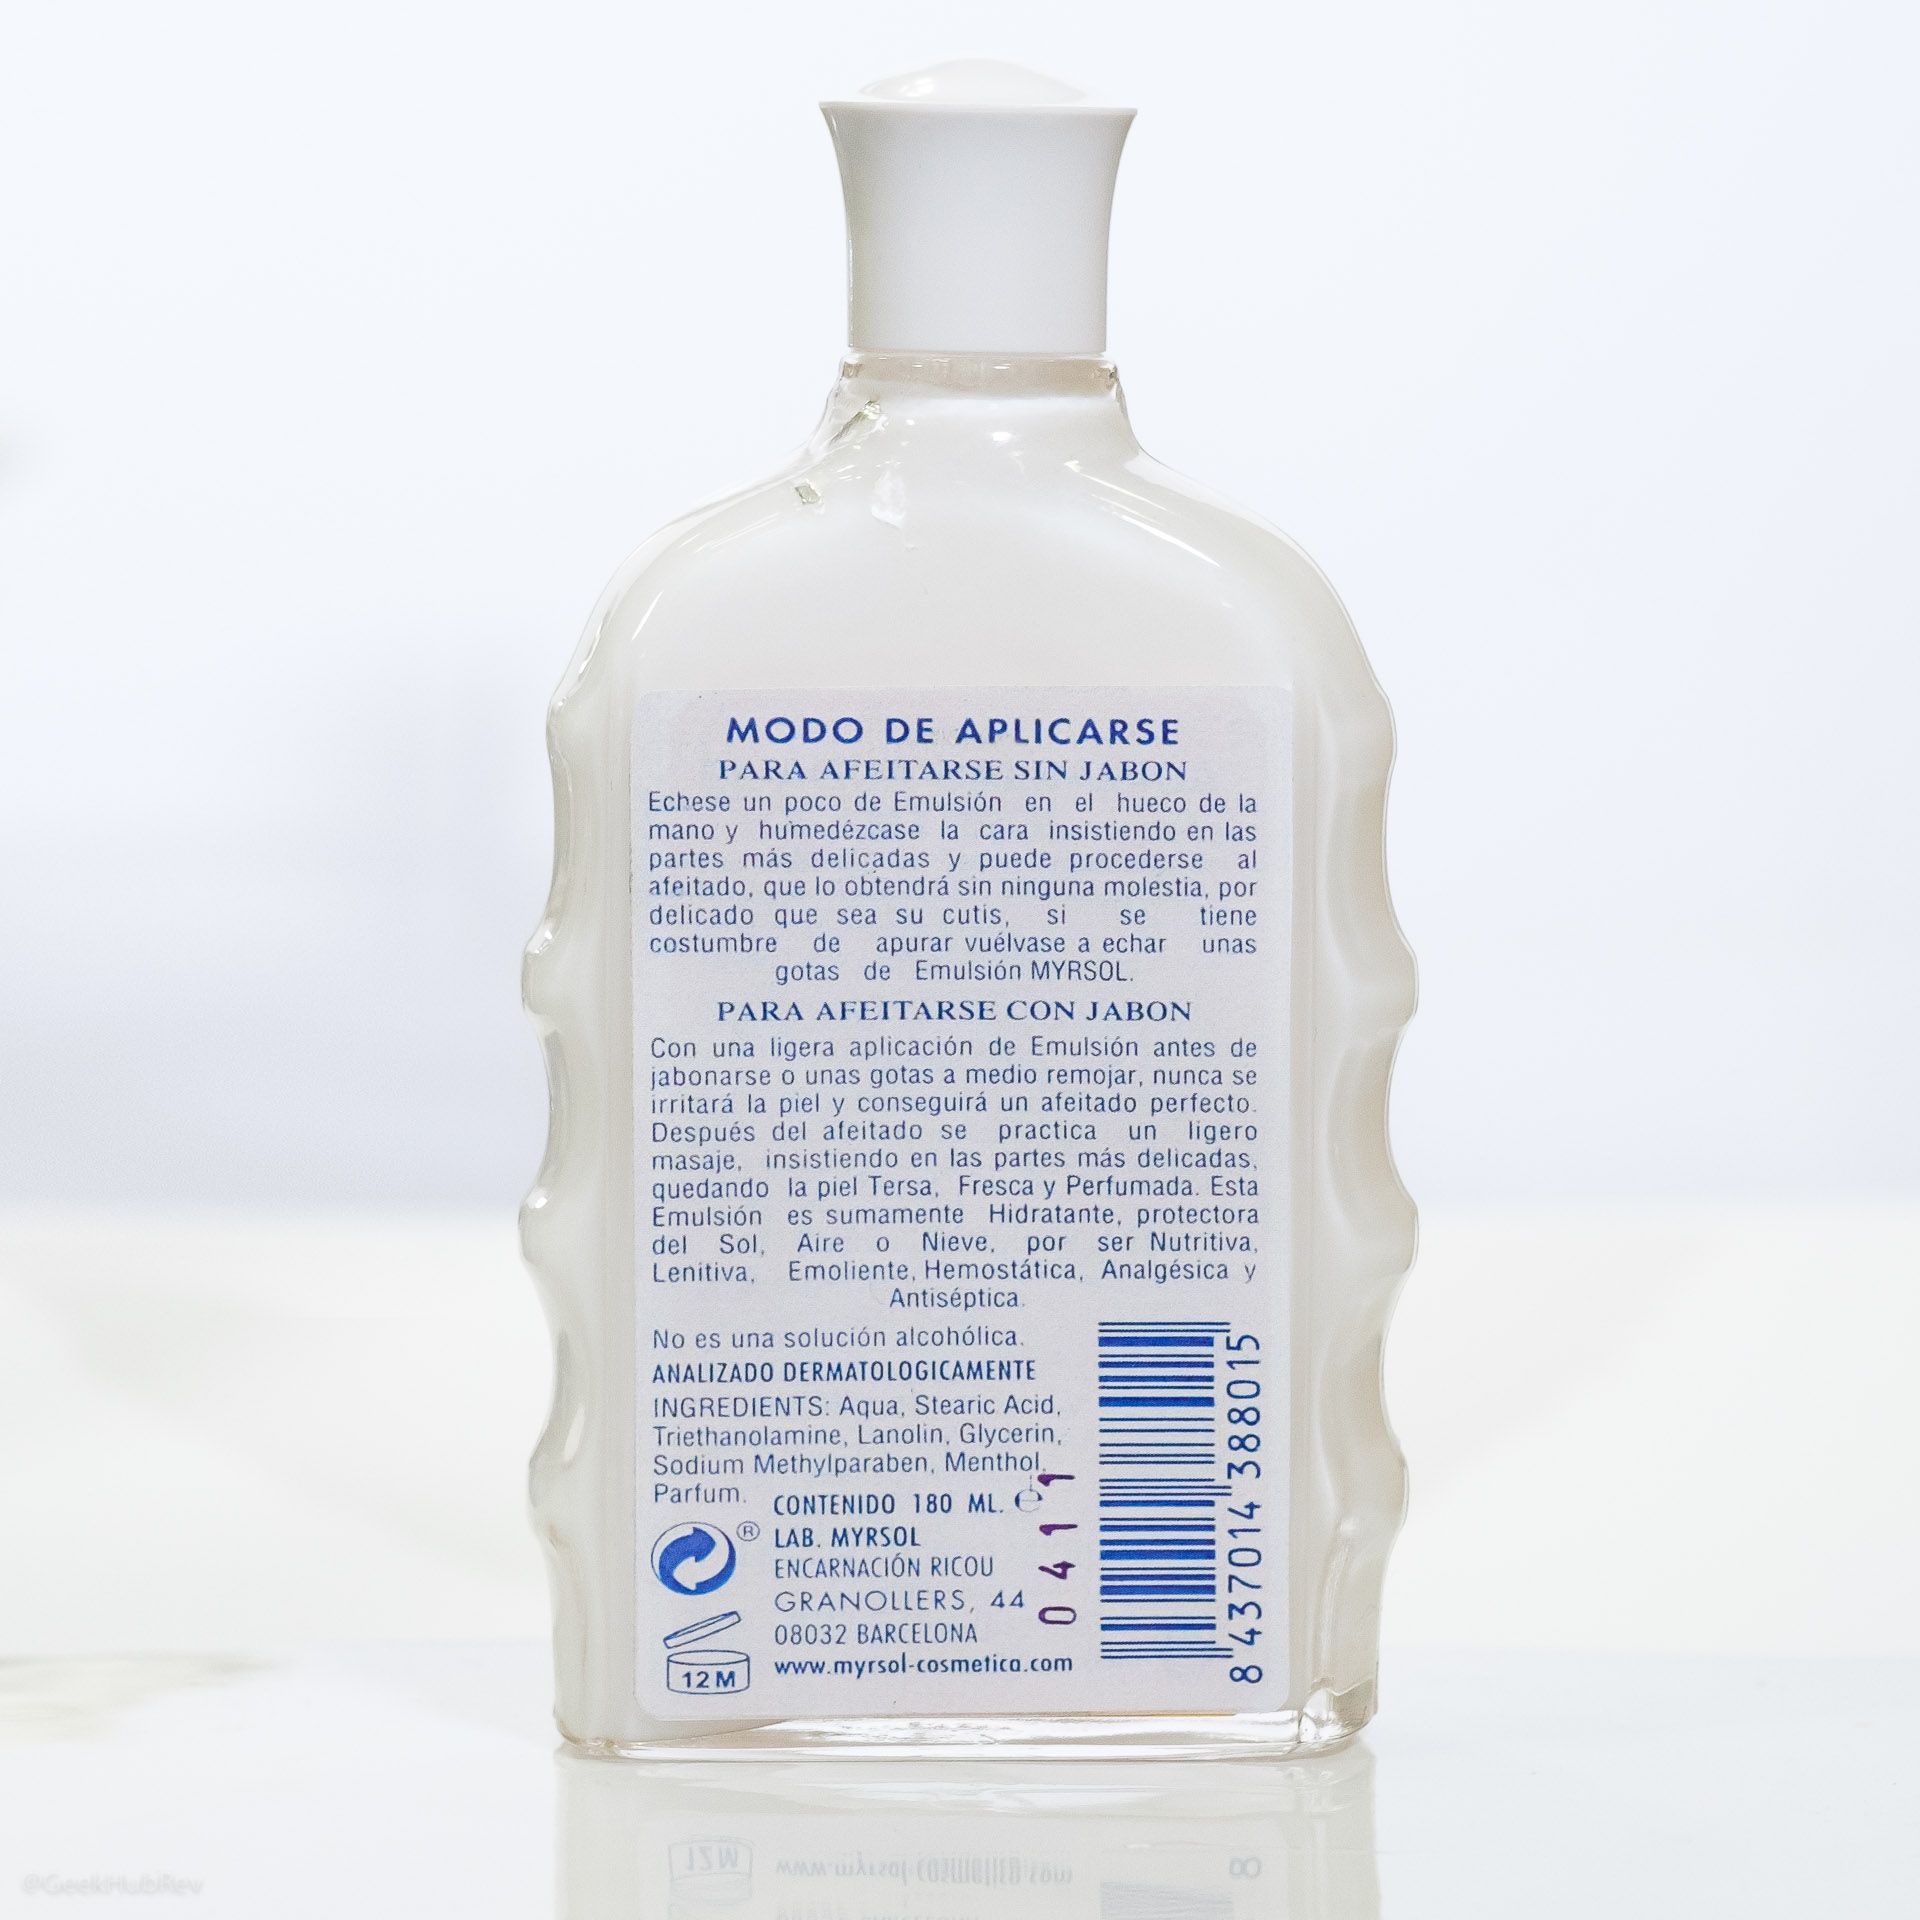 Skład Myrsol Emulsion (INCI ingredients)